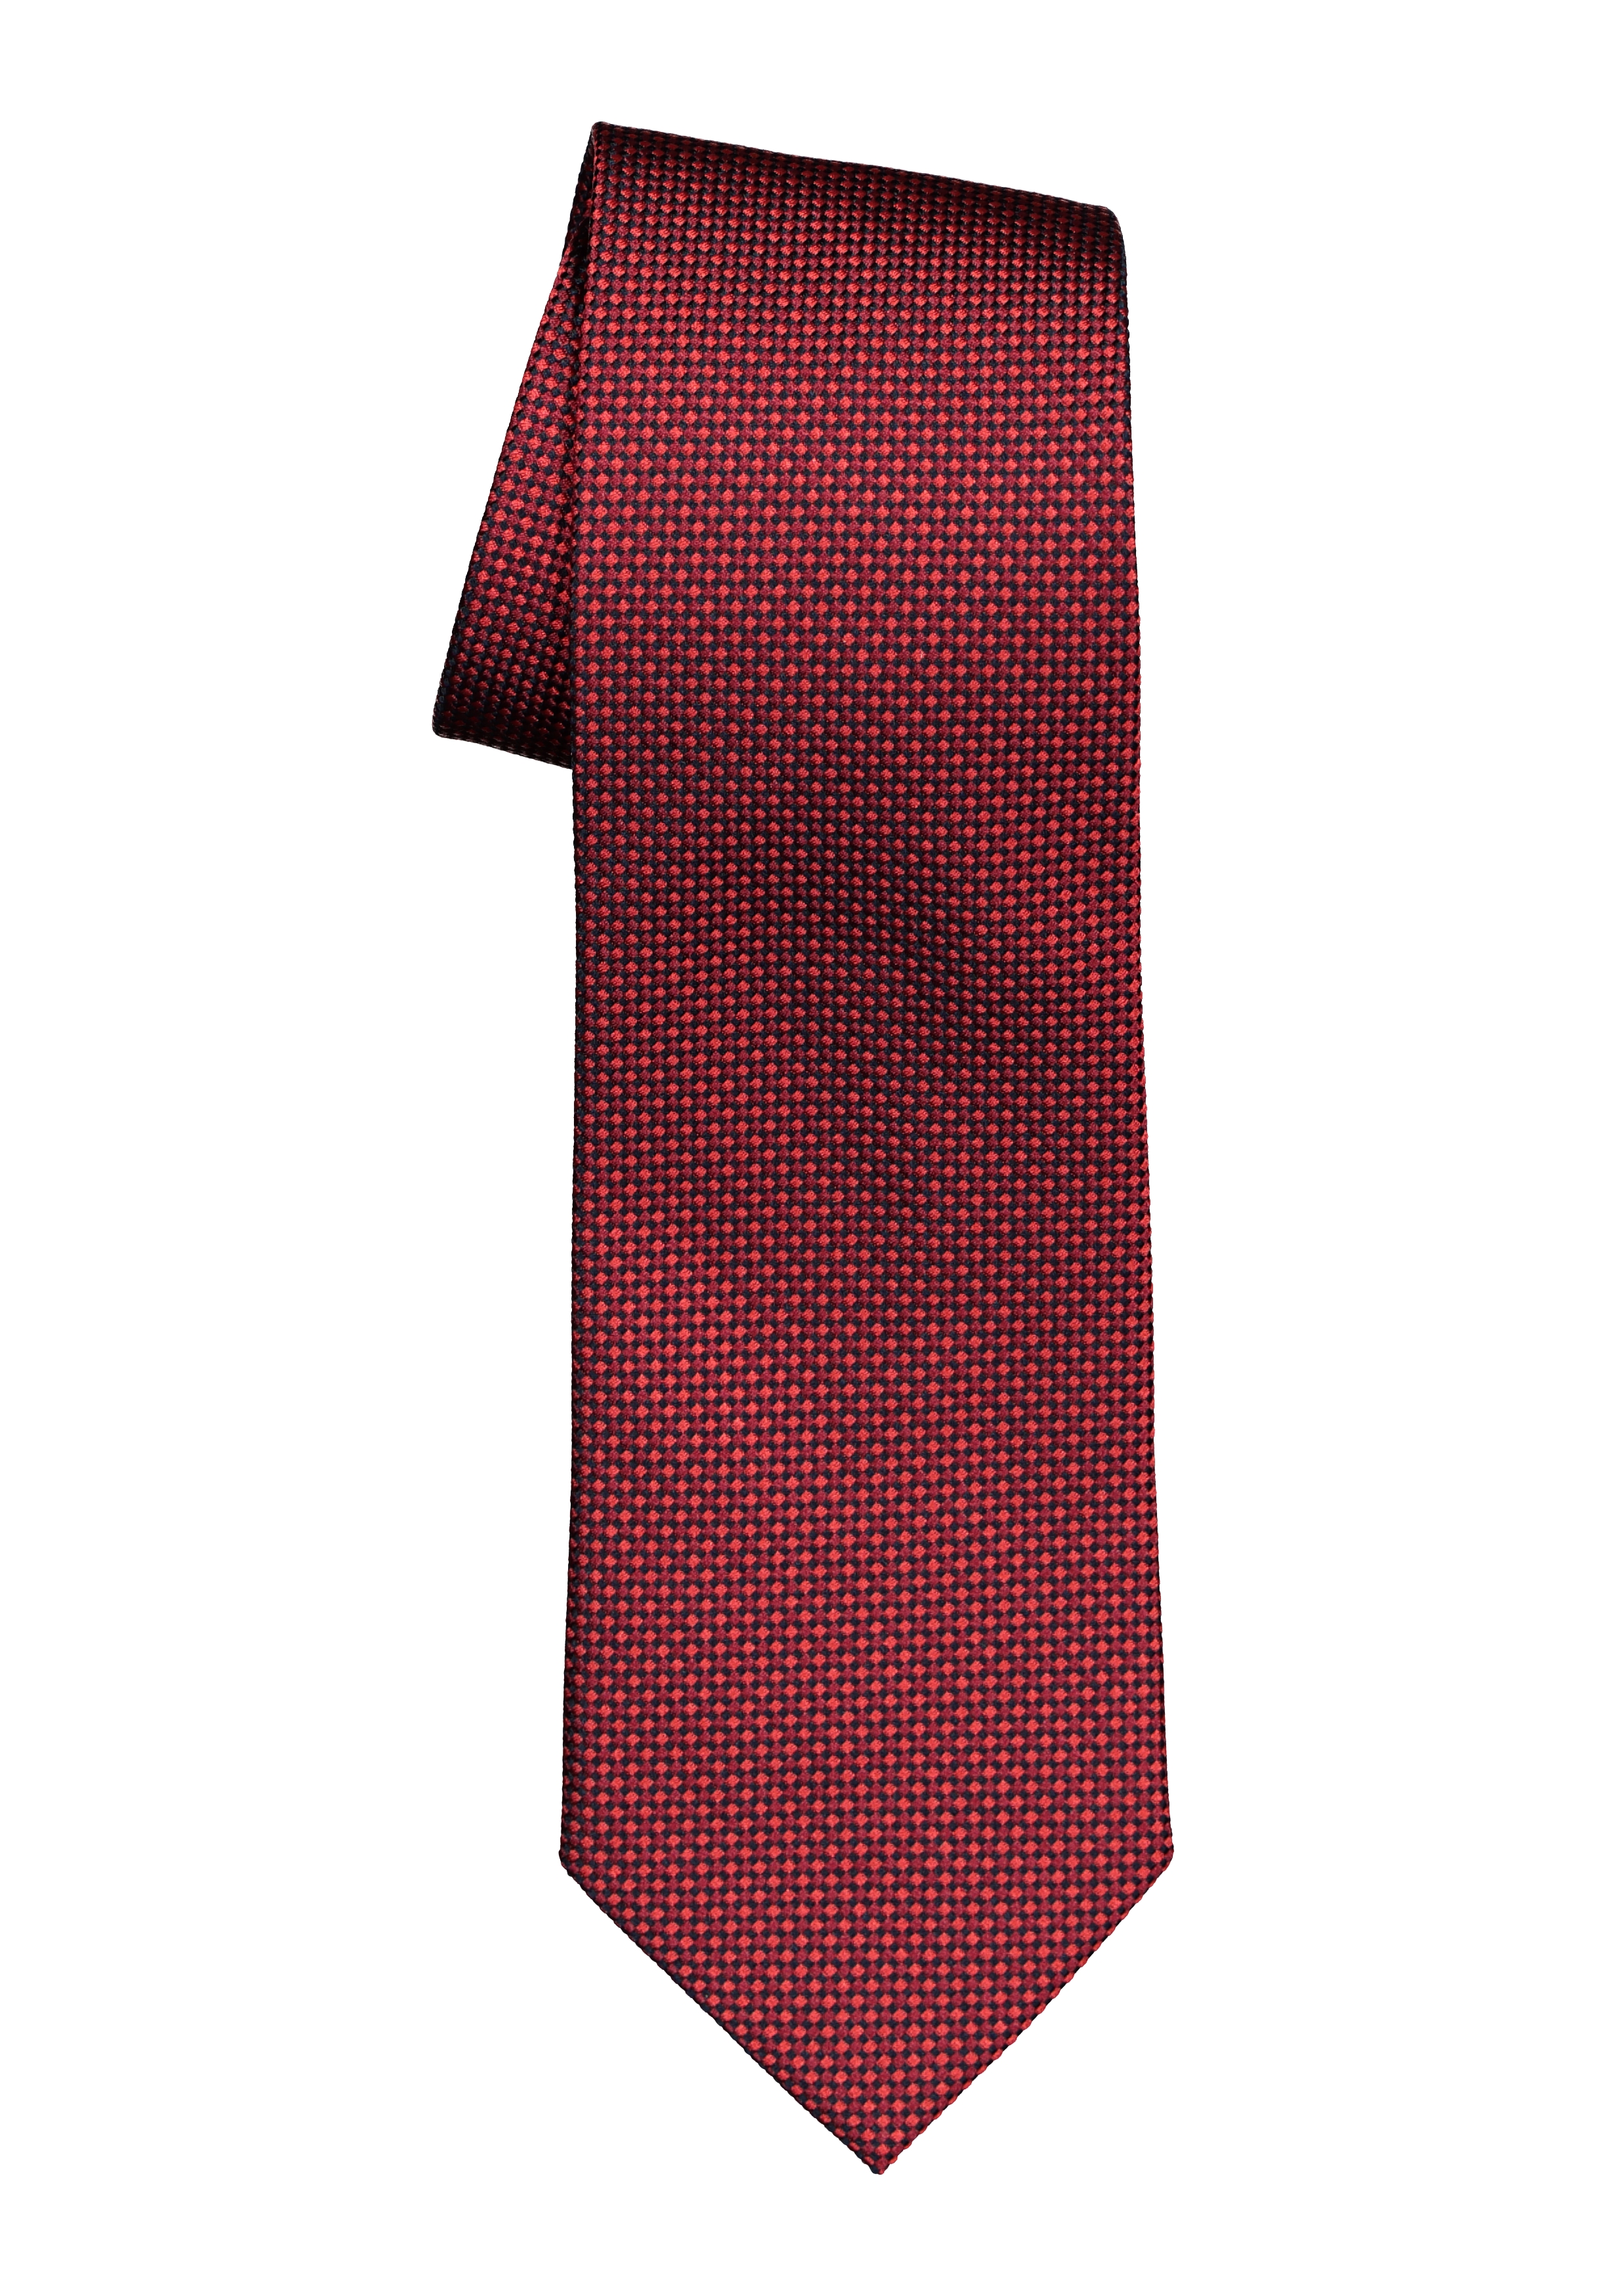 President Vaag Zachte voeten Michaelis stropdas, bordeaux rood motief - Shop de nieuwste voorjaarsmode